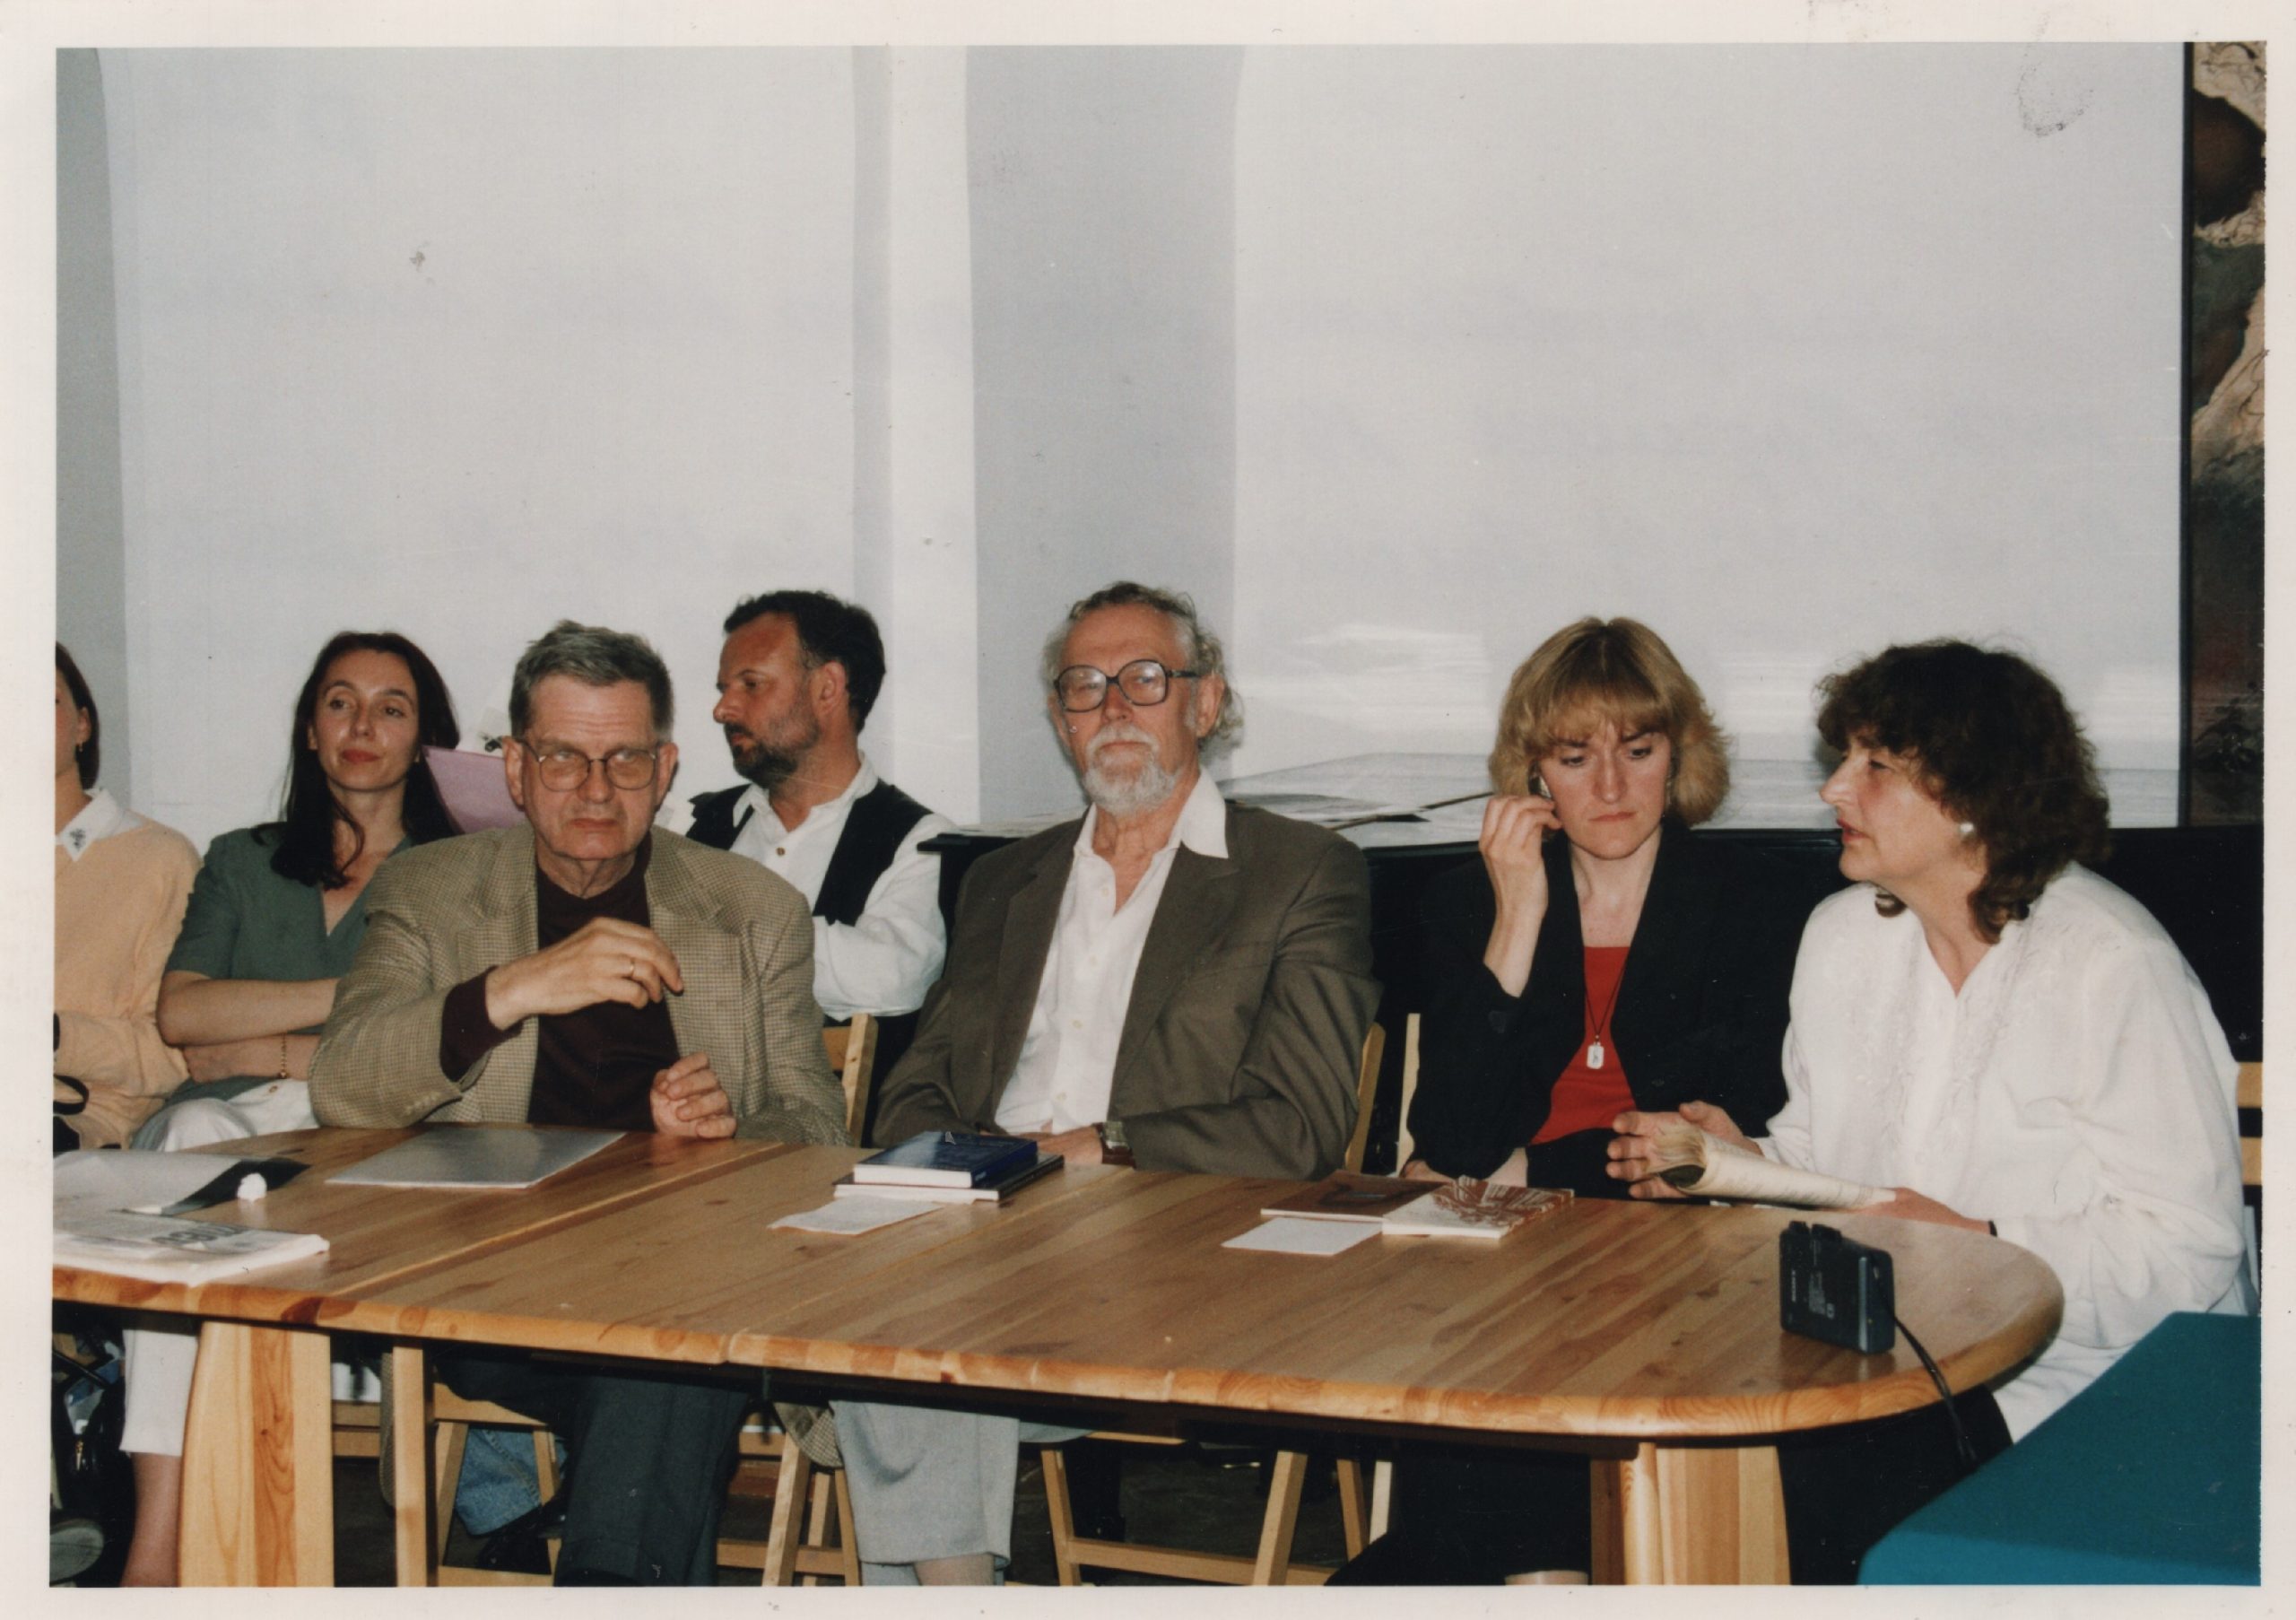 Lenkijos-Lietuvos draugijos klubo susirinkimas. M. Martinaitis, J. Vaičiūnaitė, T. Venclova ir kt. Vygriai, 1997 m. birželis. MLLM P54717